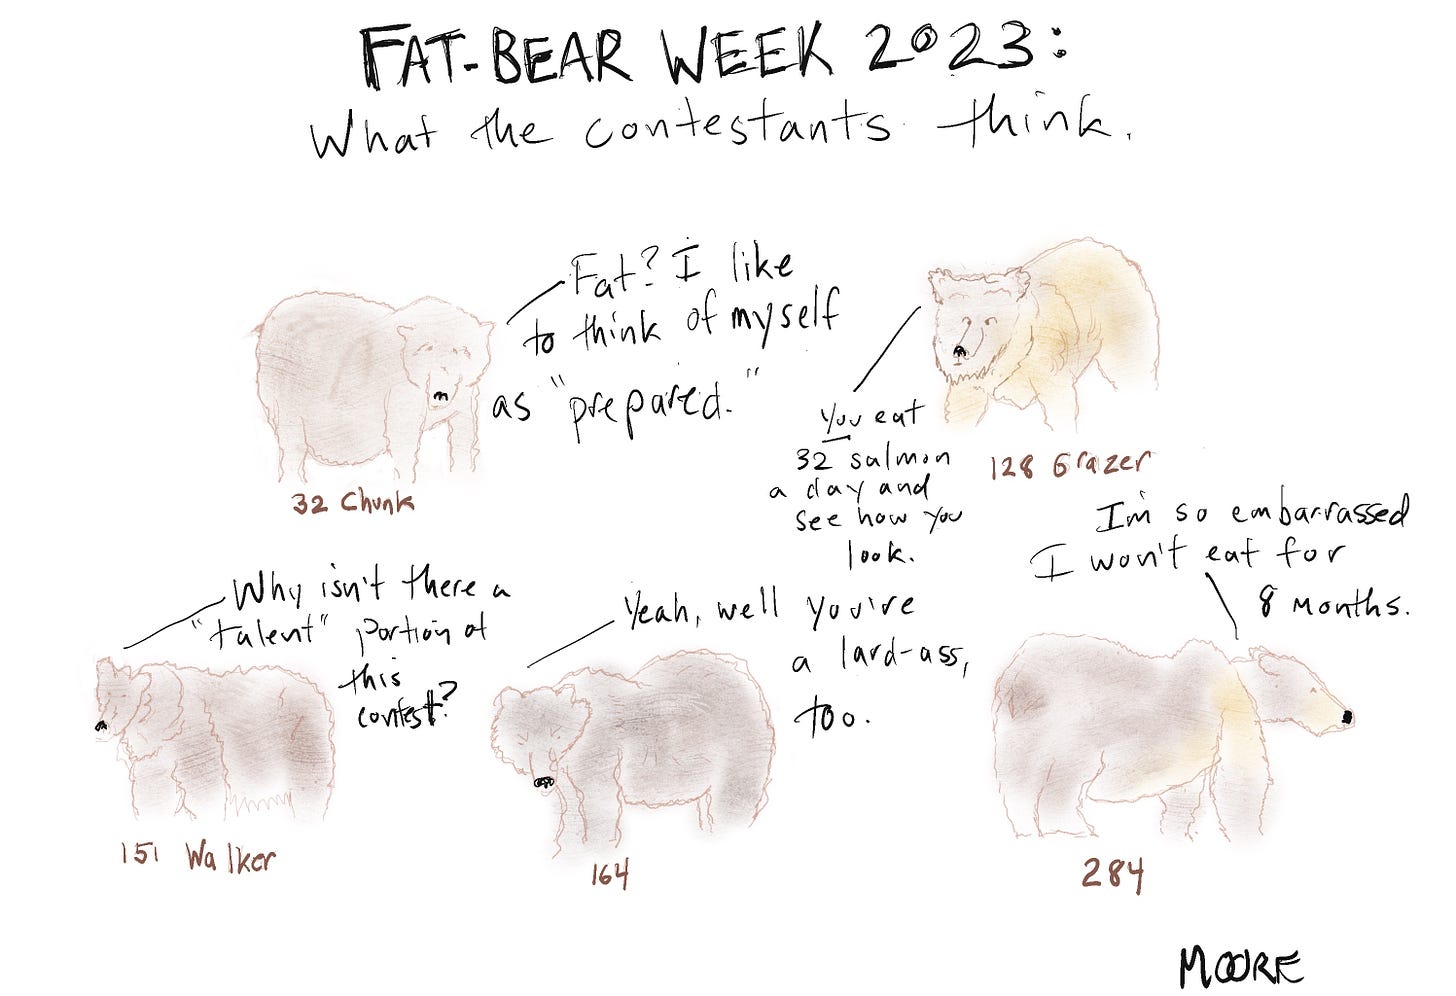 Fat bear week 2023